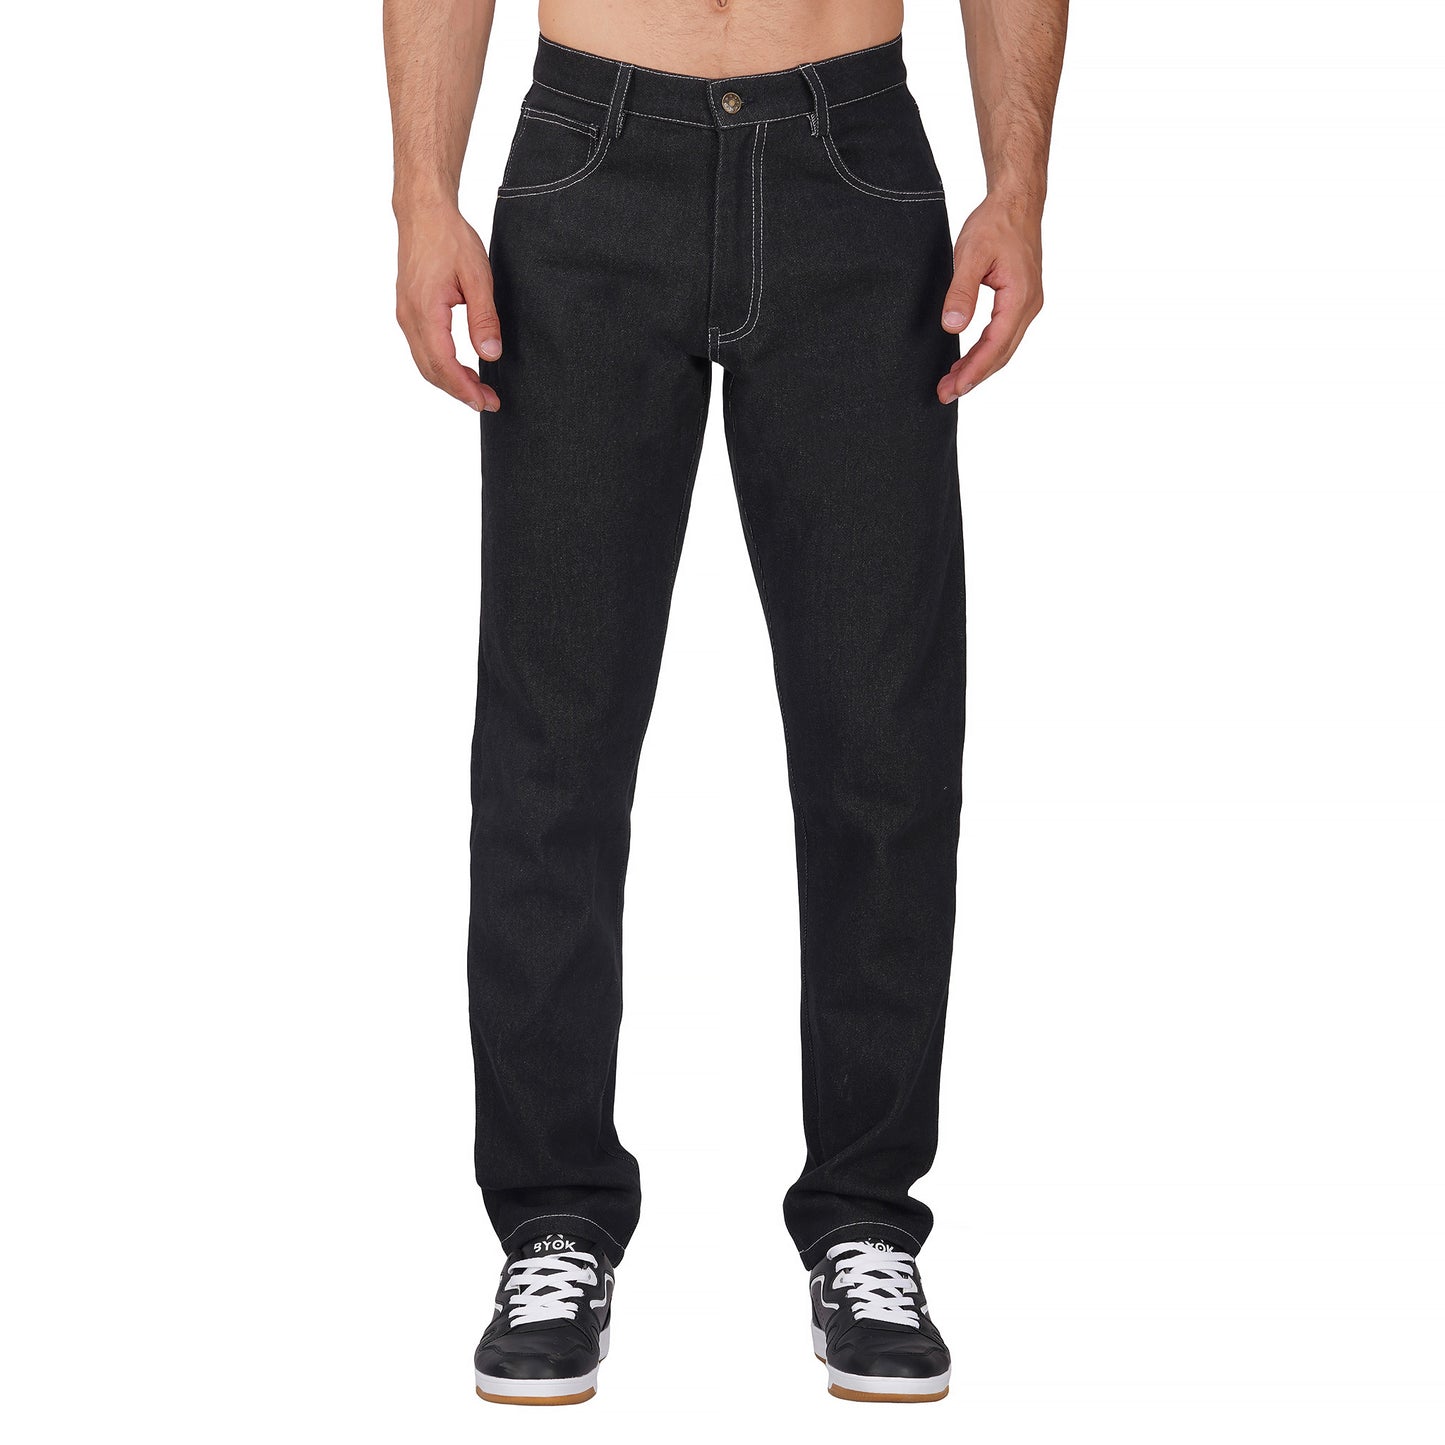 Men's Slim Fit Black Colour Jeans Pants | jeyachandran.com